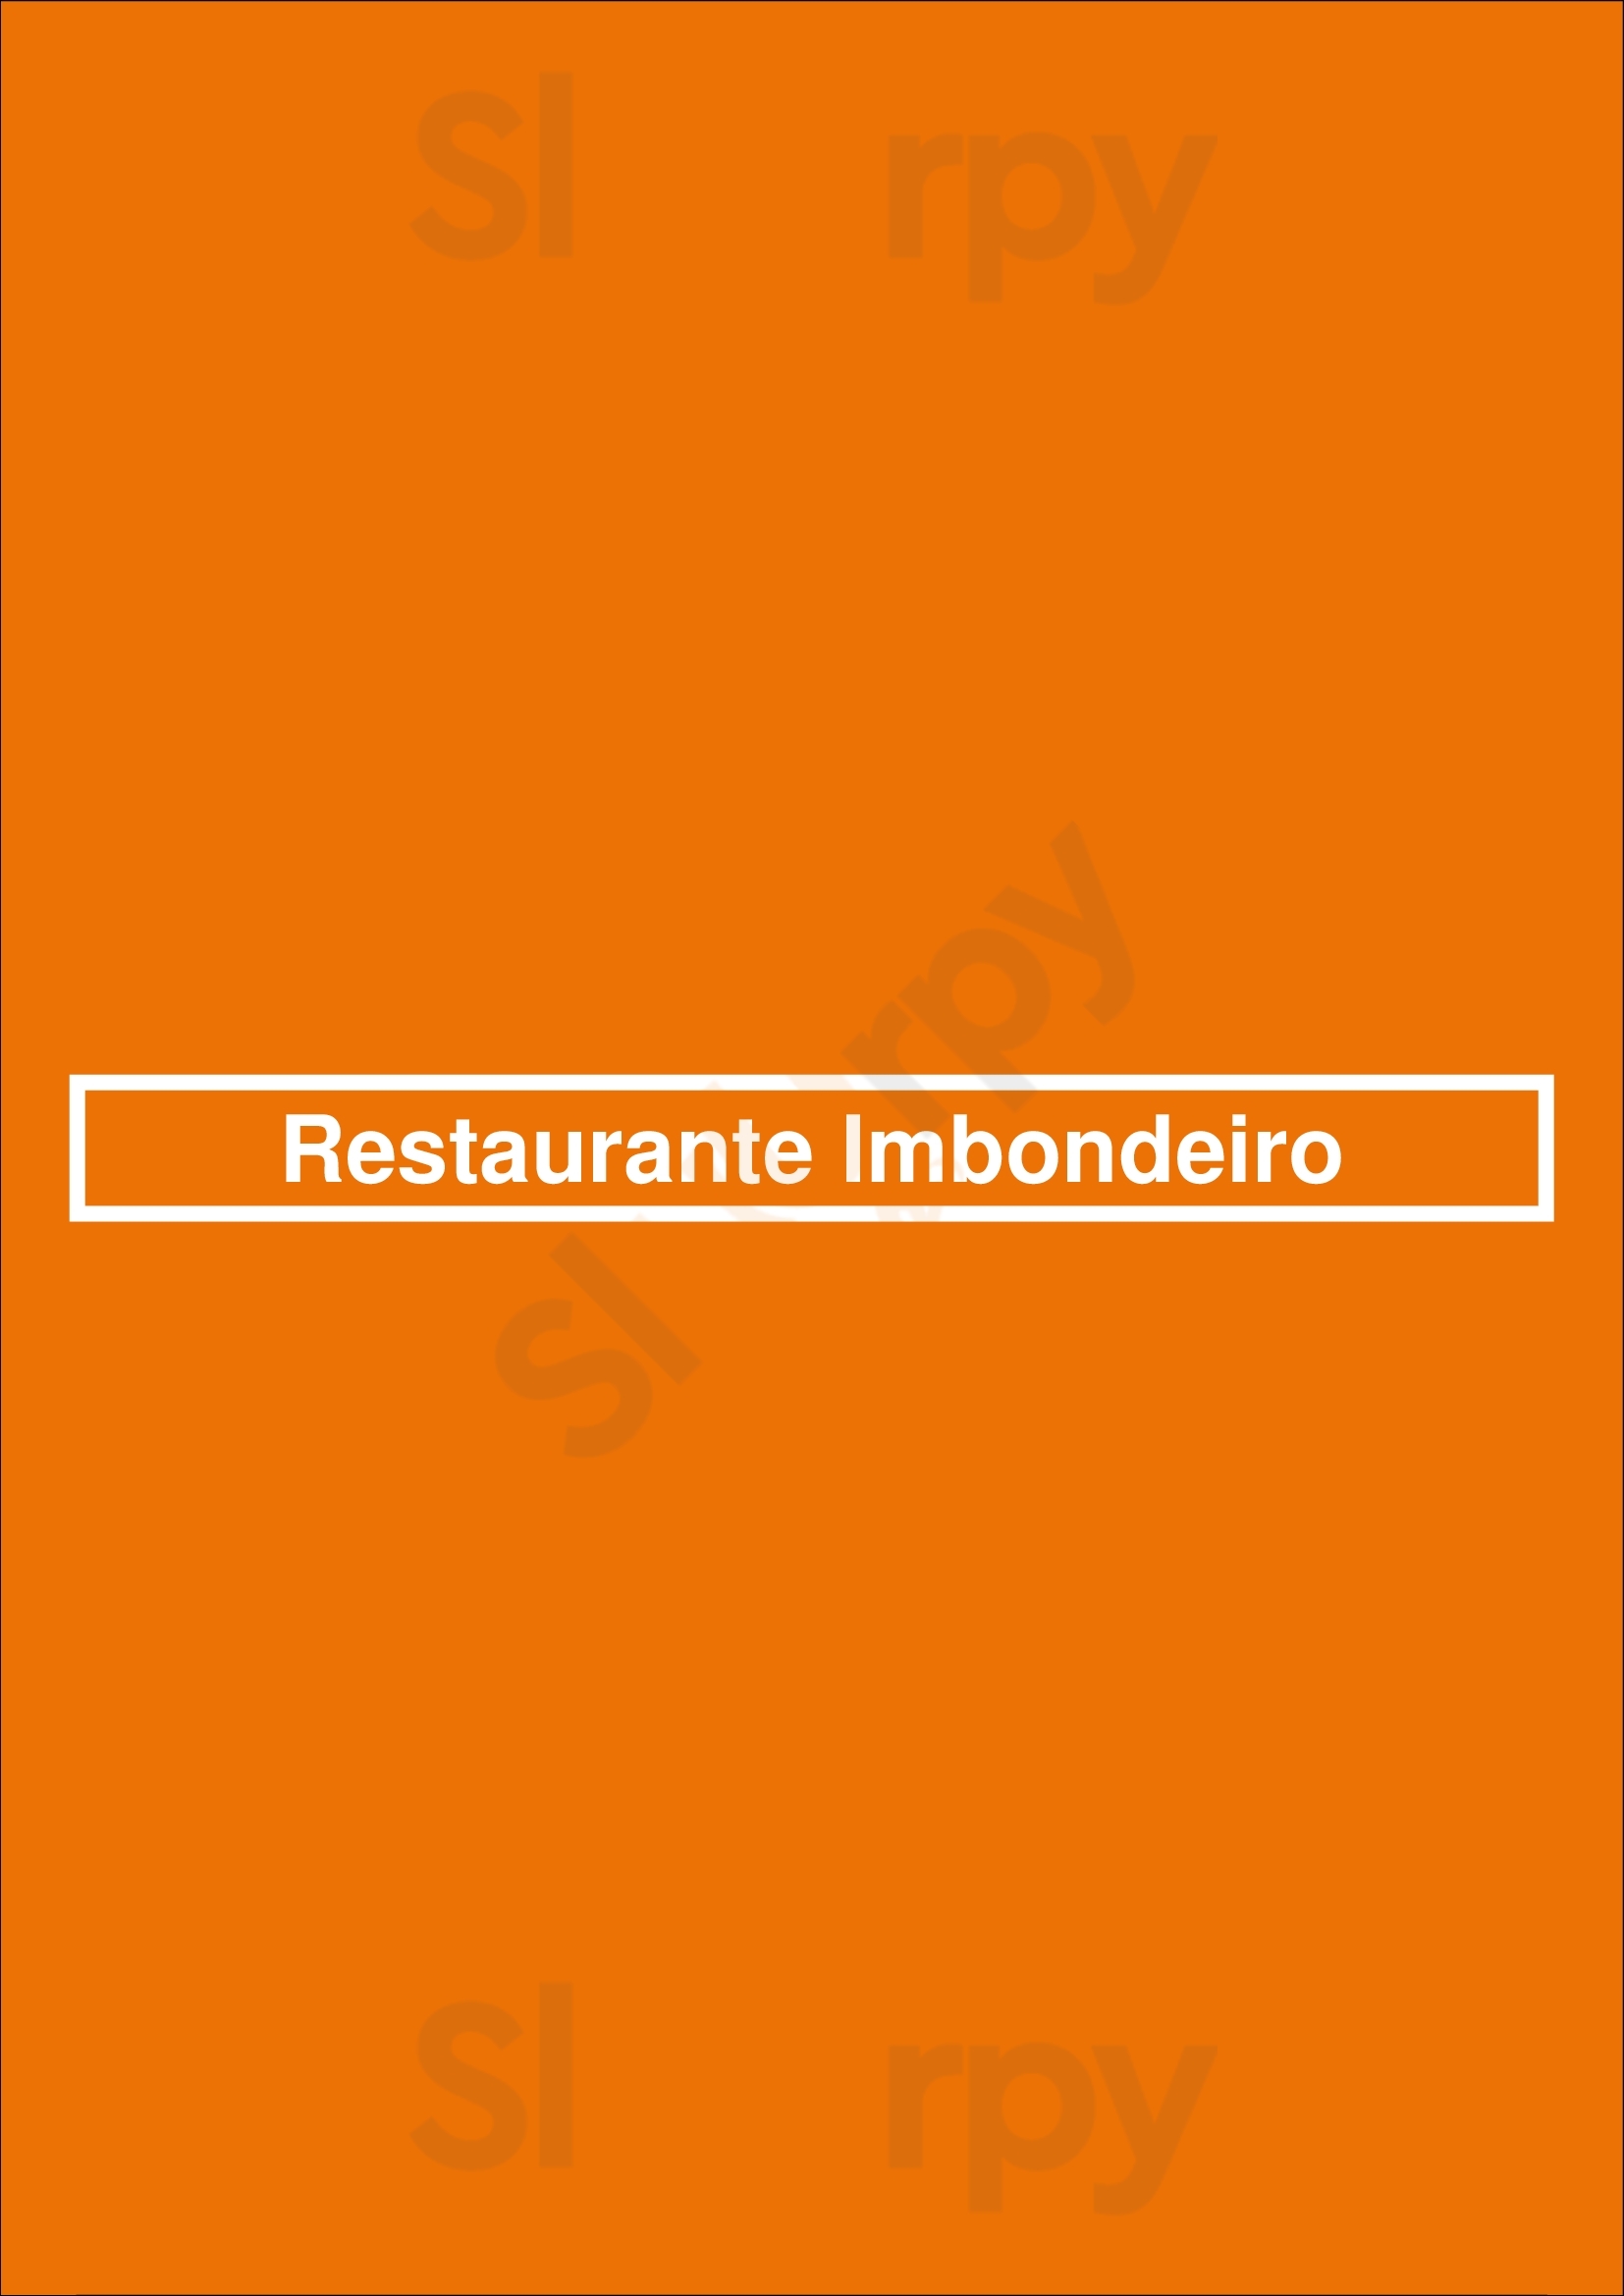 Restaurante Imbondeiro Lisboa Menu - 1